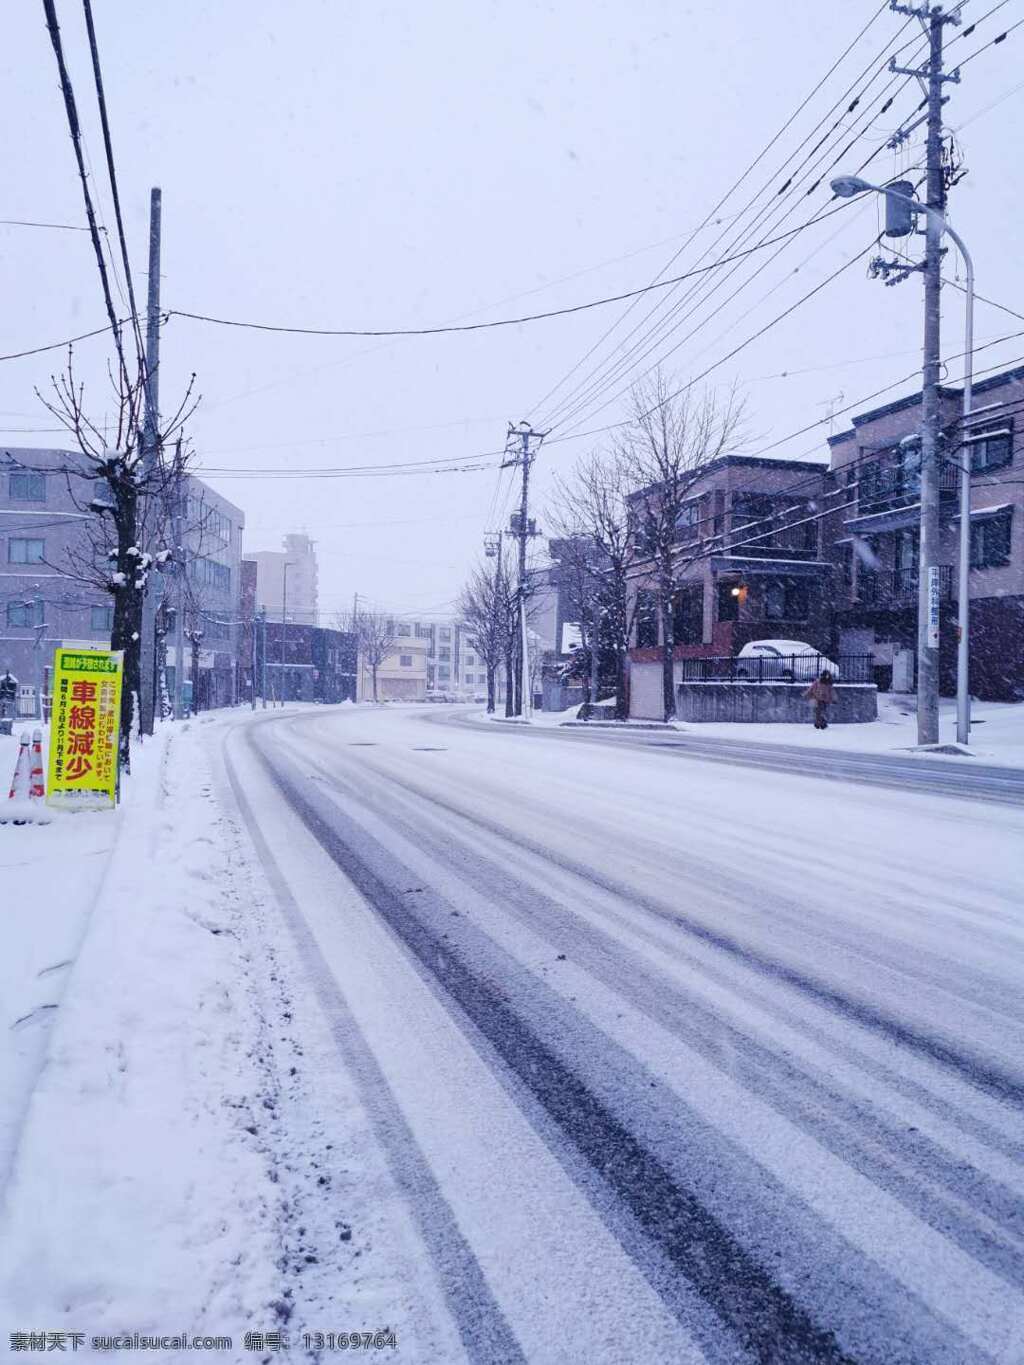 札幌雪景 雪 街道雪景 日本街道 雪景 初雪 旅游摄影 国外旅游